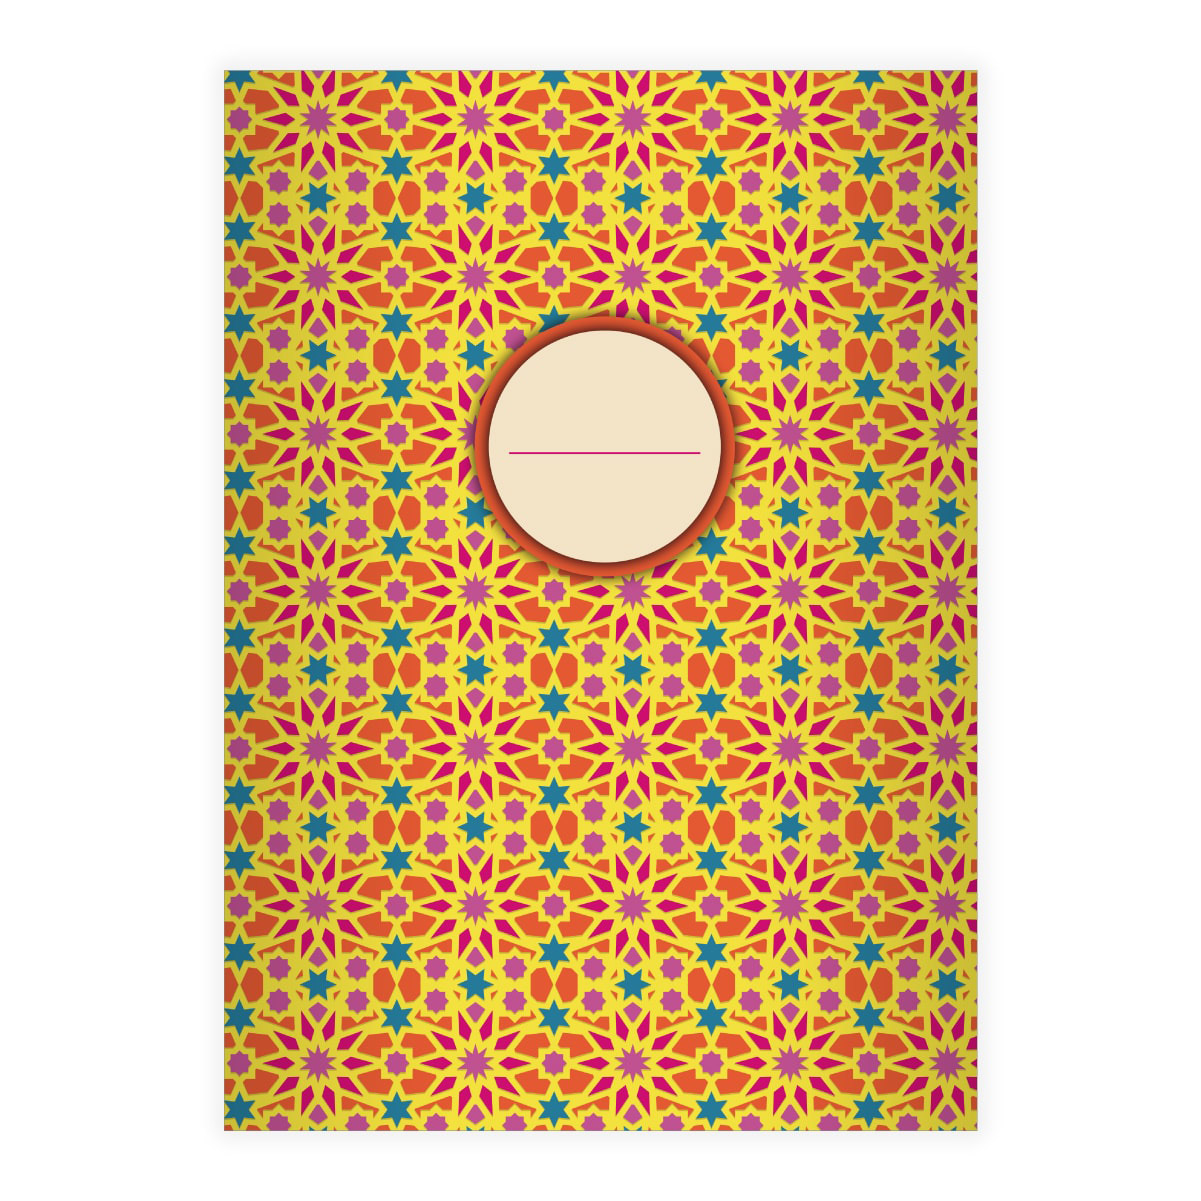 Kartenkaufrausch: Sternen Mosaik Notizheft/ Schulheft aus unserer Designer Papeterie in orange